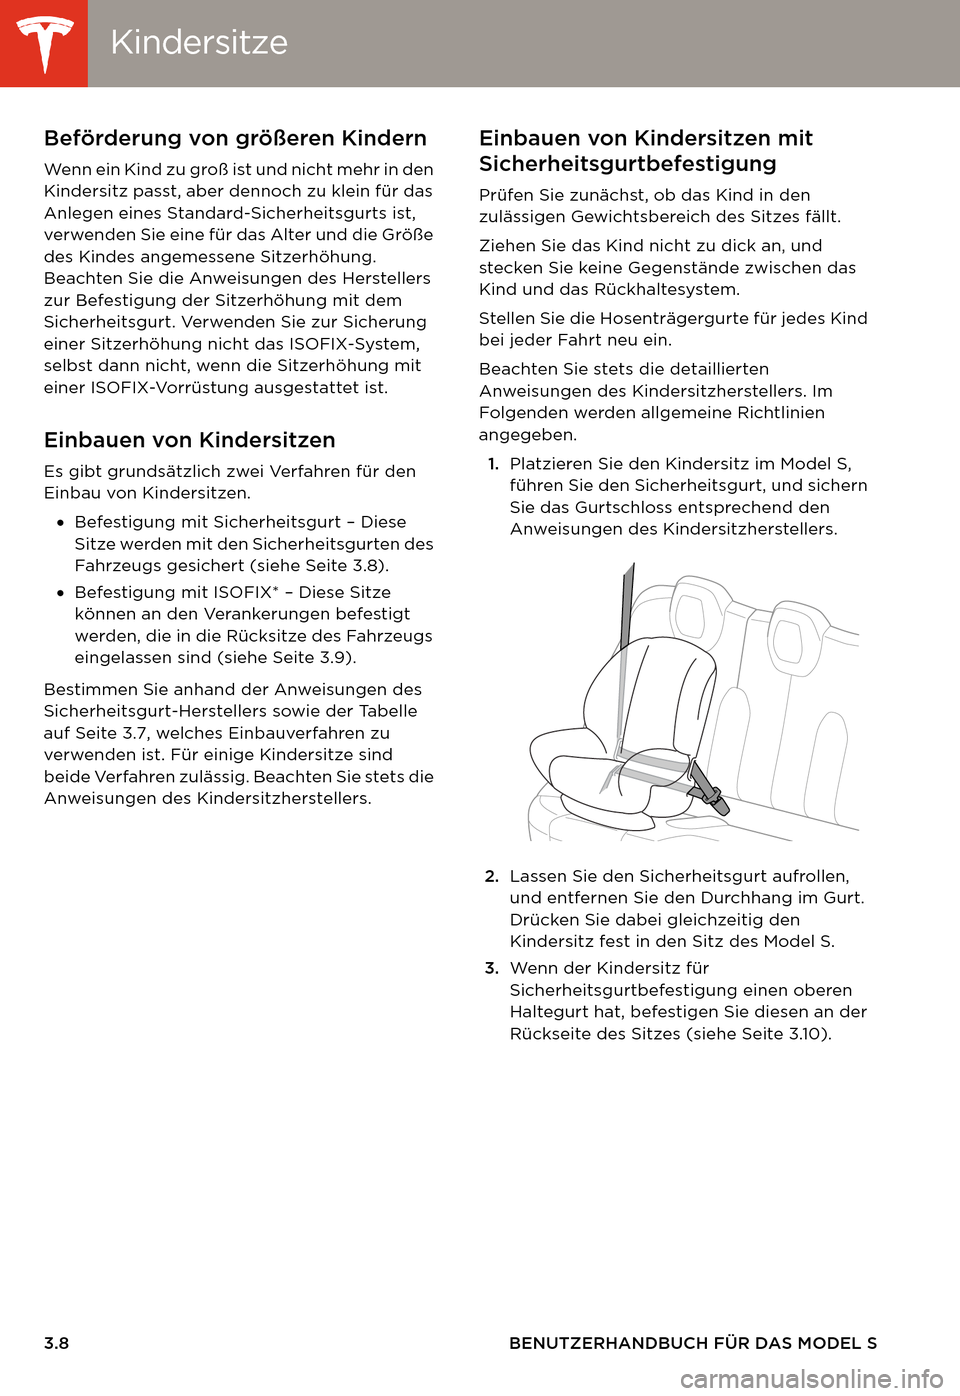 TESLA MODEL S 2014  Betriebsanleitung (in German) KindersitzeKindersitze
3.8 BENUTZERHANDBUCH FÜR DAS MODEL S
Beförderung von größeren Kindern
Wenn ein Kind zu groß ist und nicht mehr in den 
Kindersitz passt, aber dennoch zu klein für das 
Anl